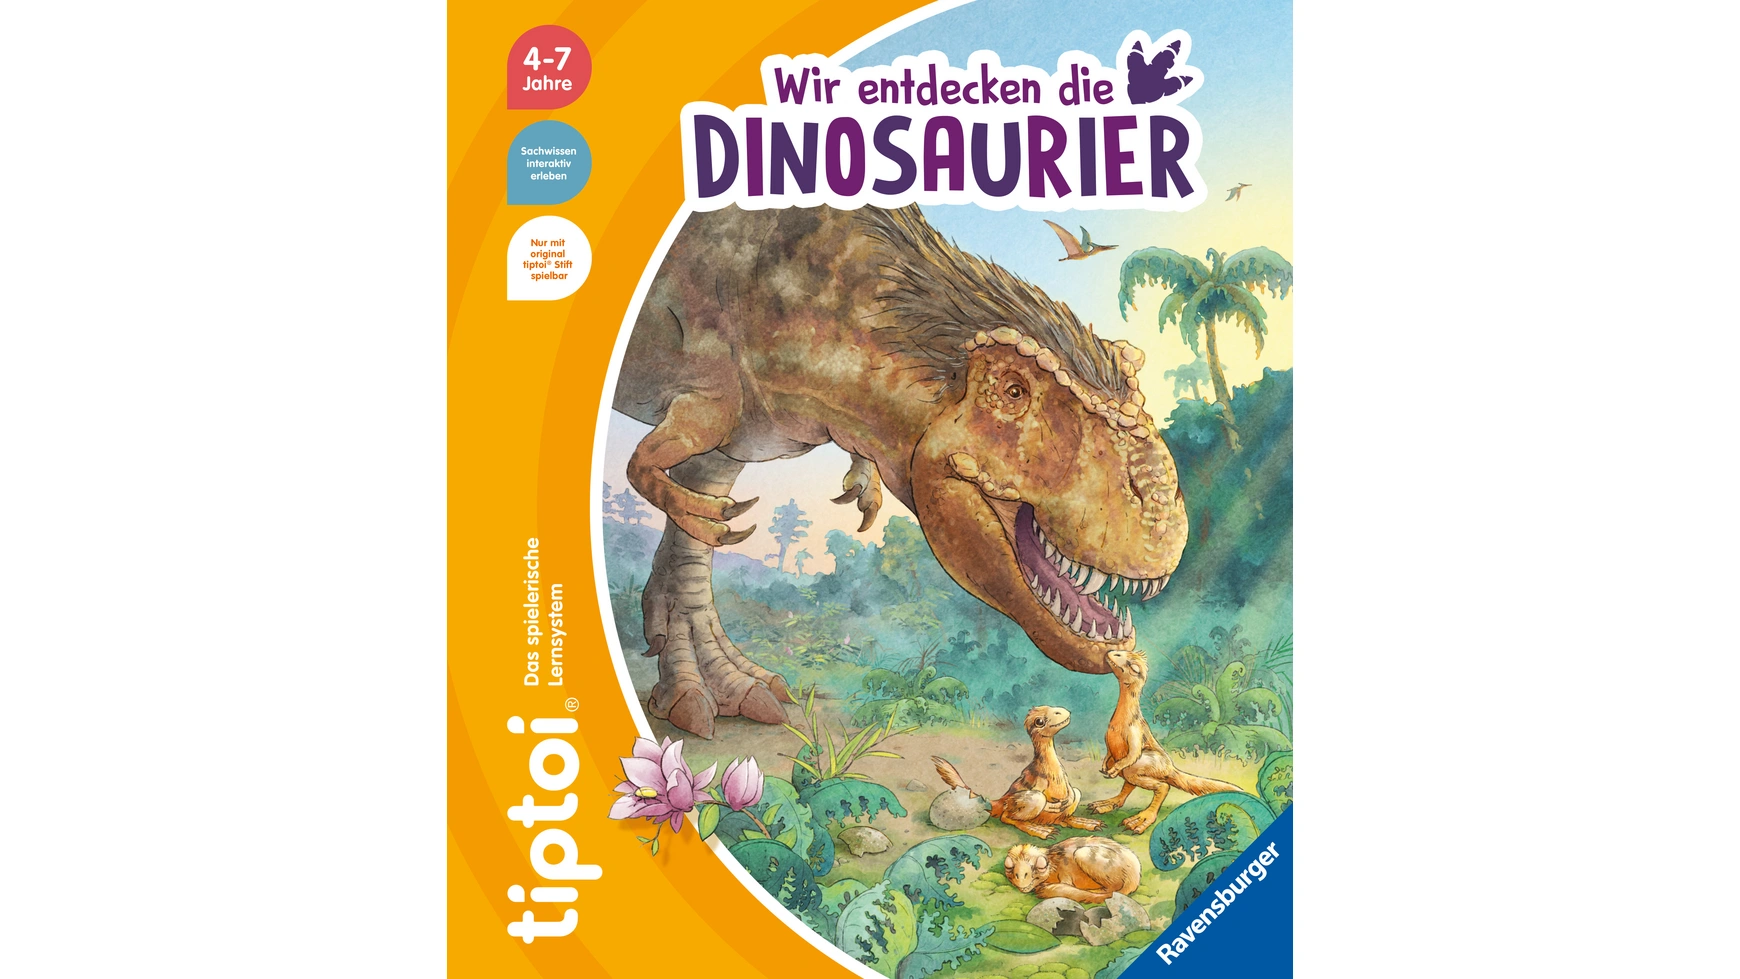 pnso доисторические модели динозавров 69 мунго мерсеи Ravensburger Tiptoi Мы обнаруживаем динозавров